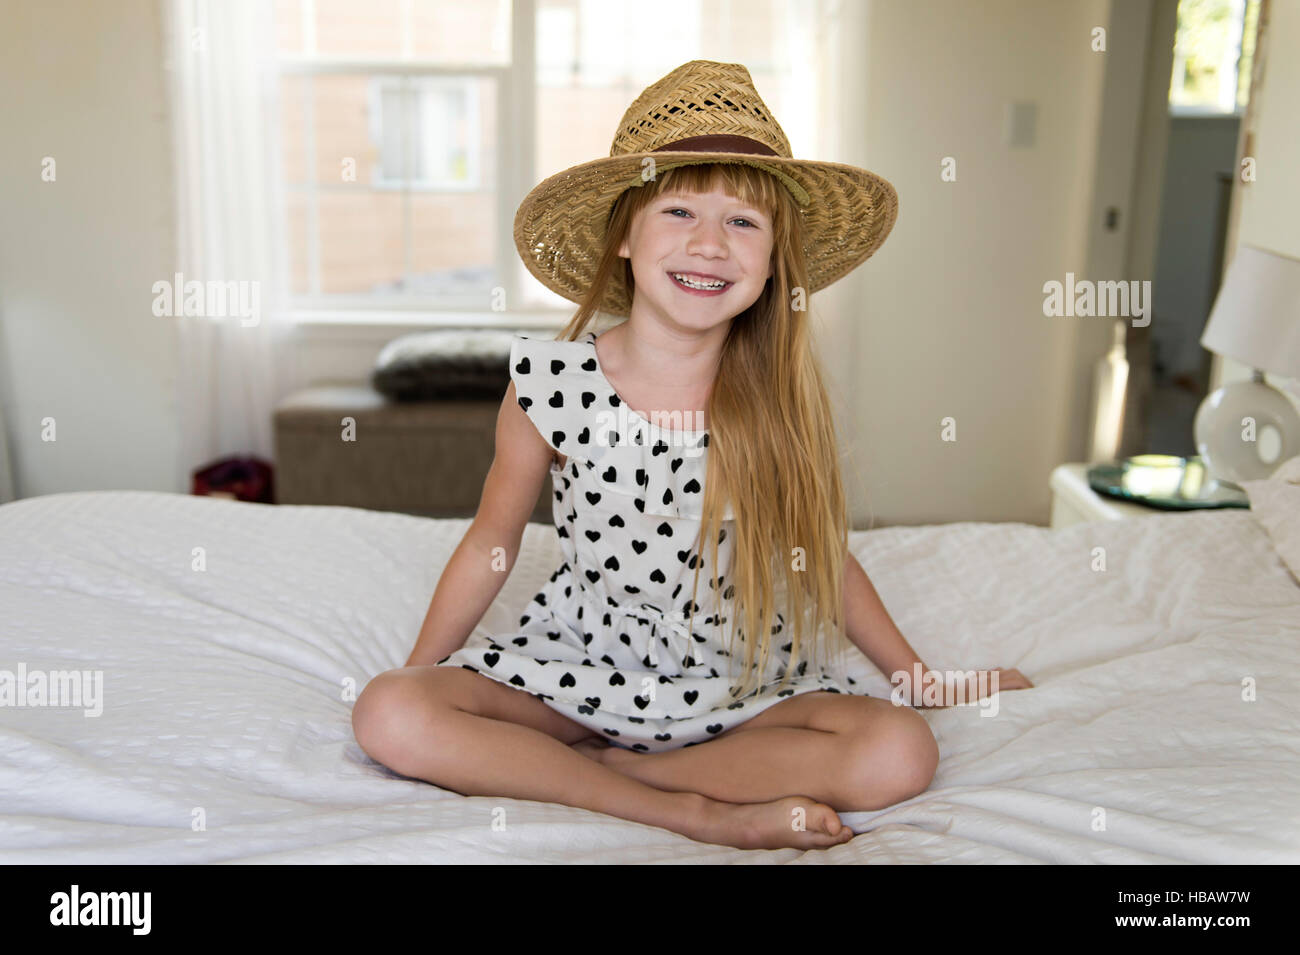 Niña sentada en la cama, sonriente, luciendo sombrero de paja Foto de stock